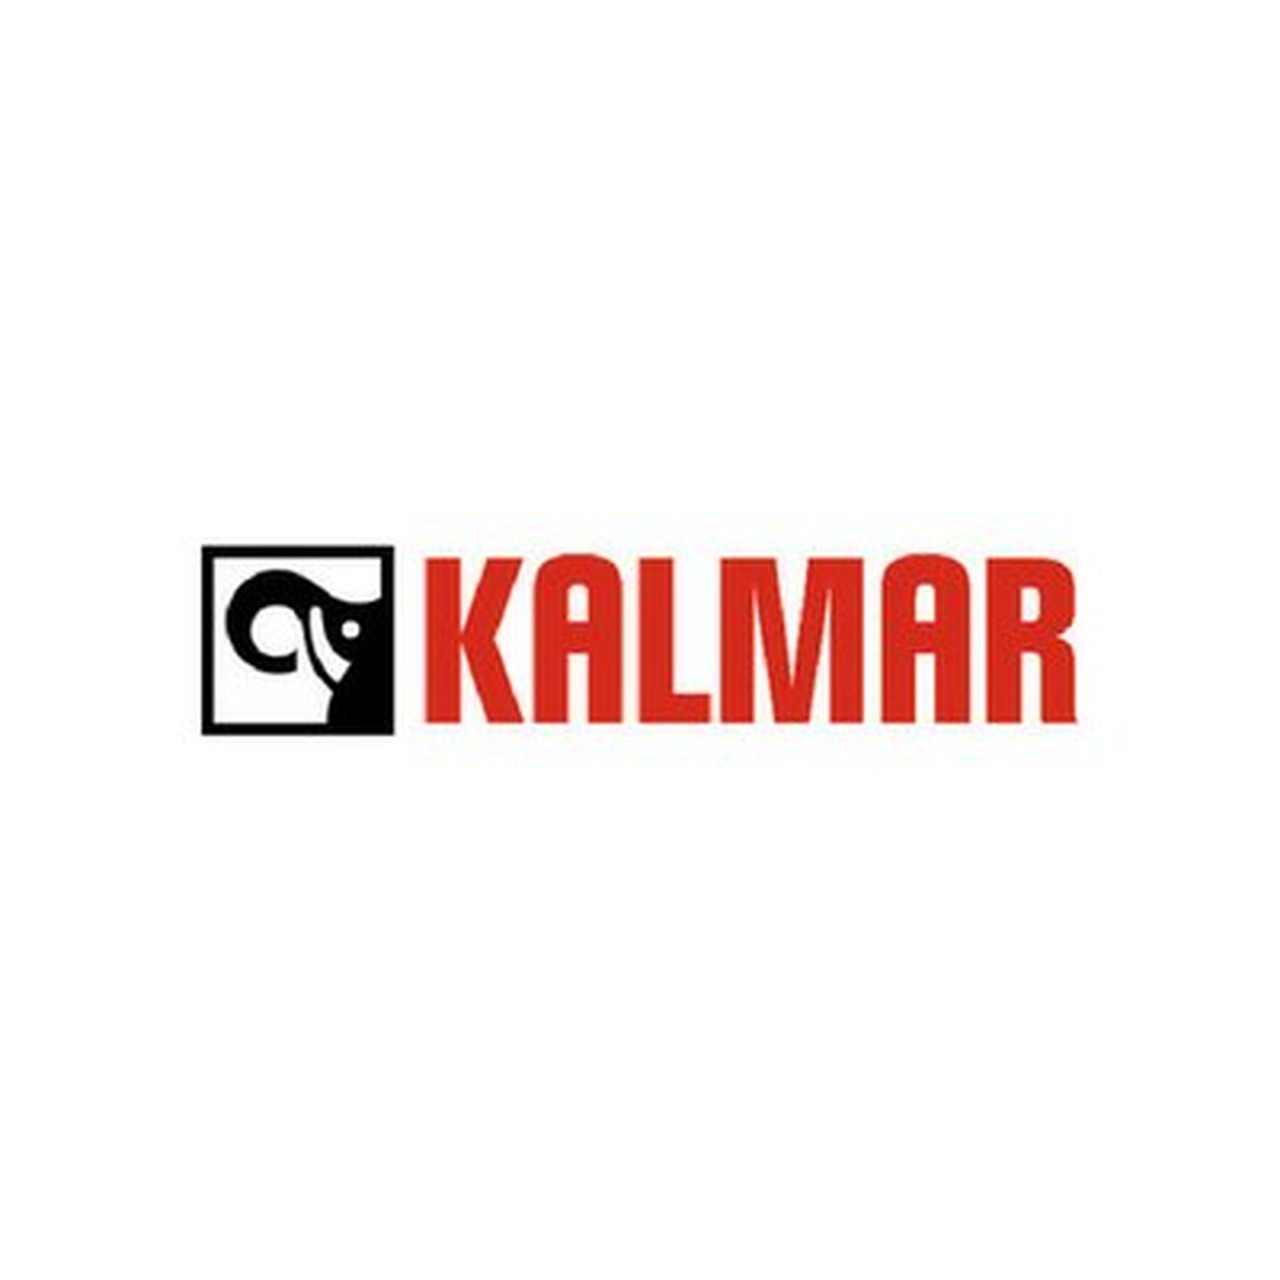 kalmar_logo_1mb